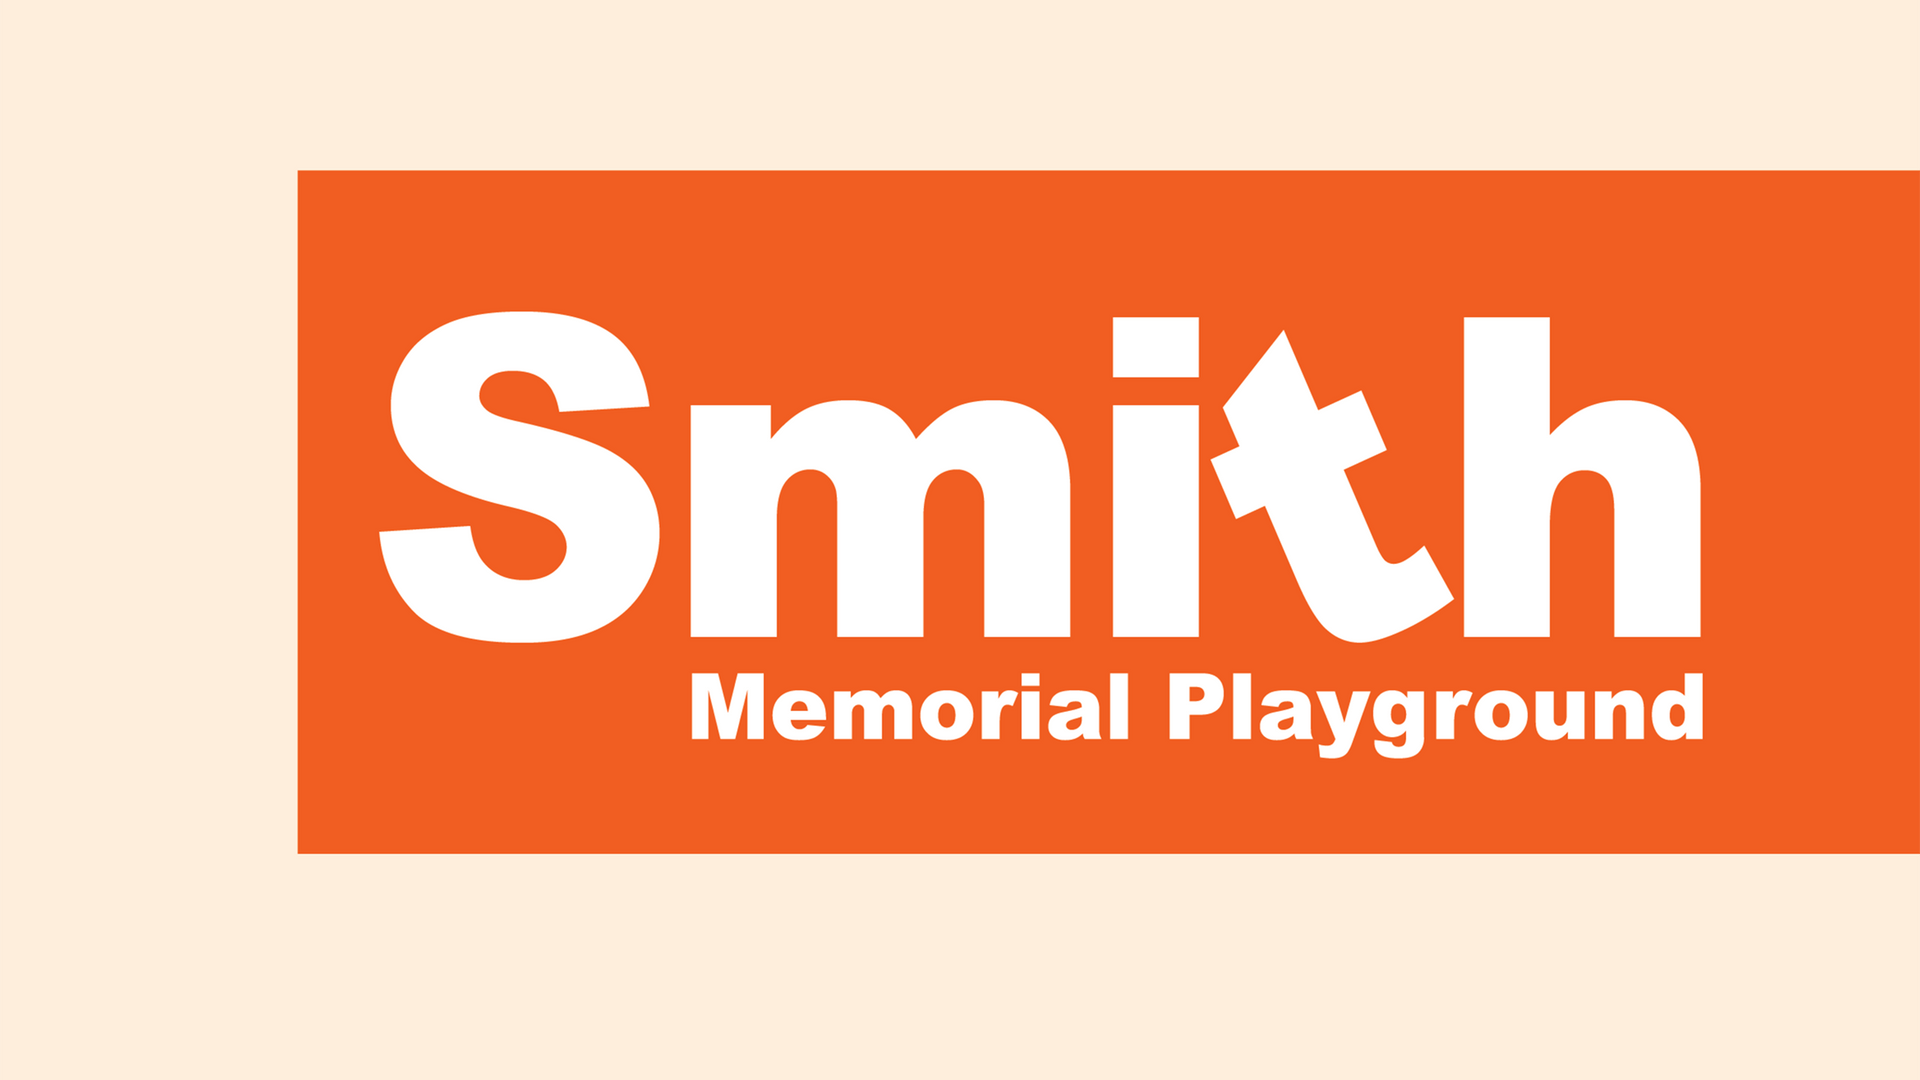 Smith Memorial Playground